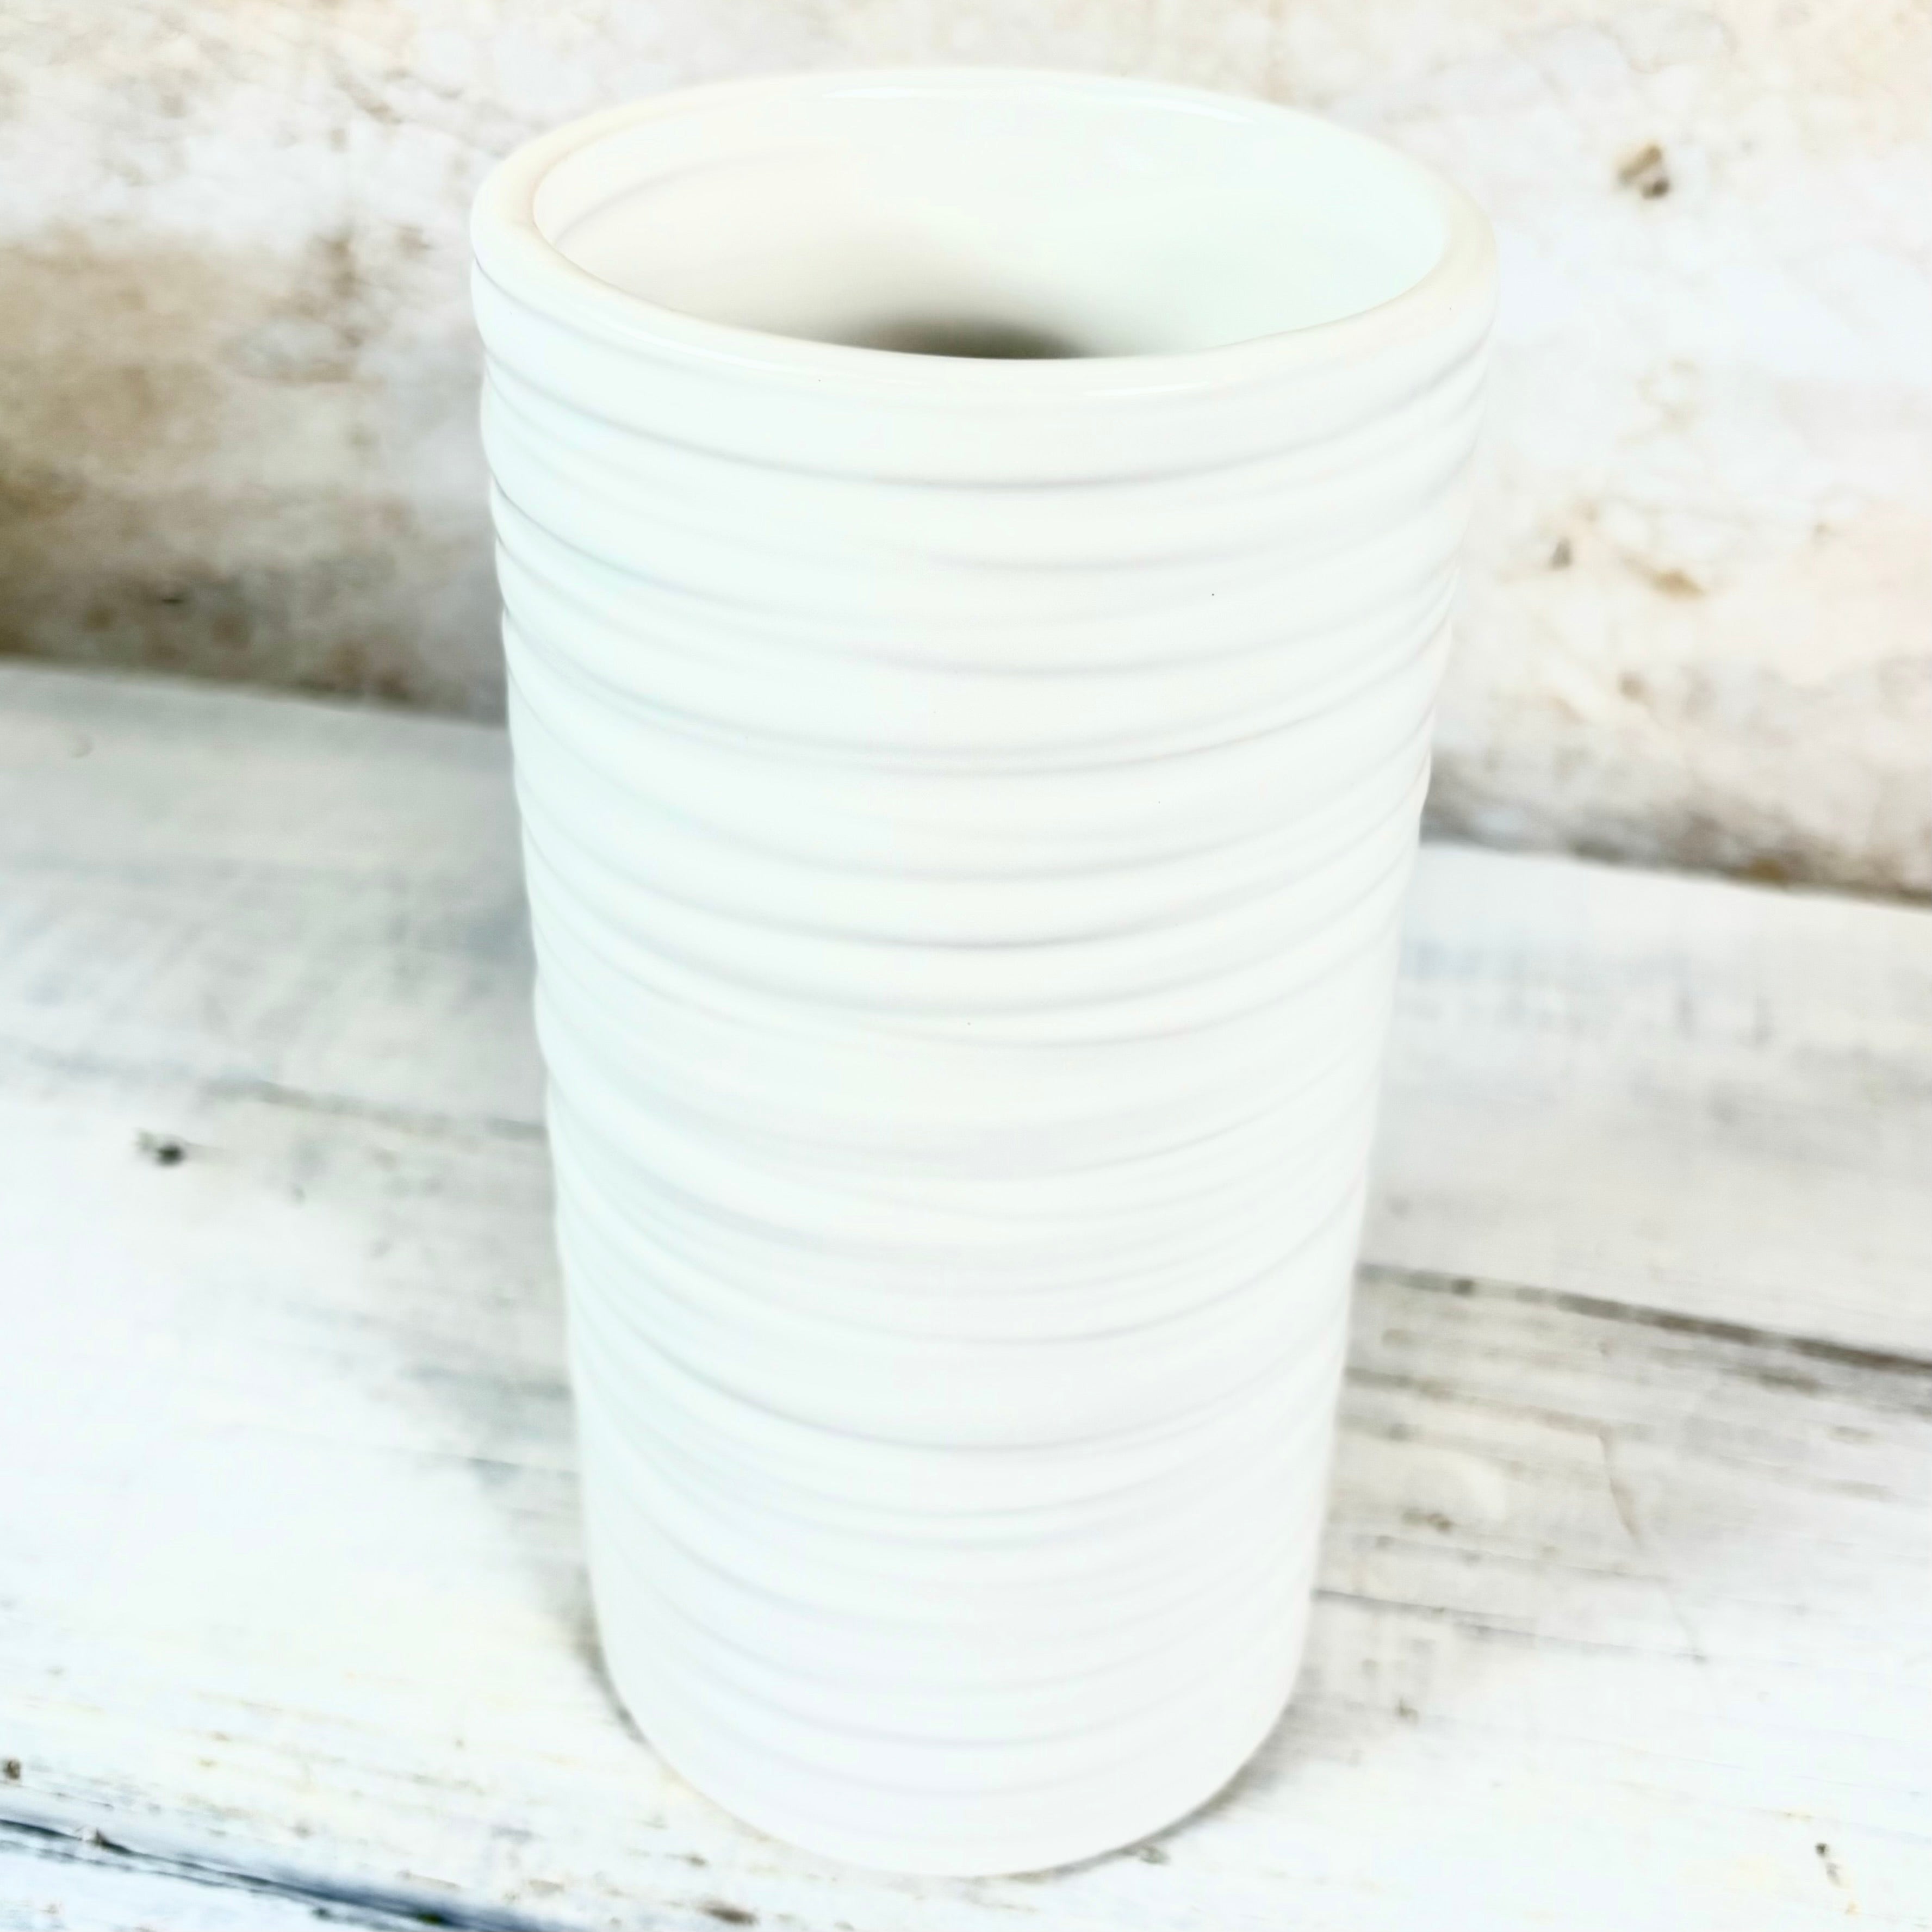 Everest White Ribbed Ceramic Vase Tall